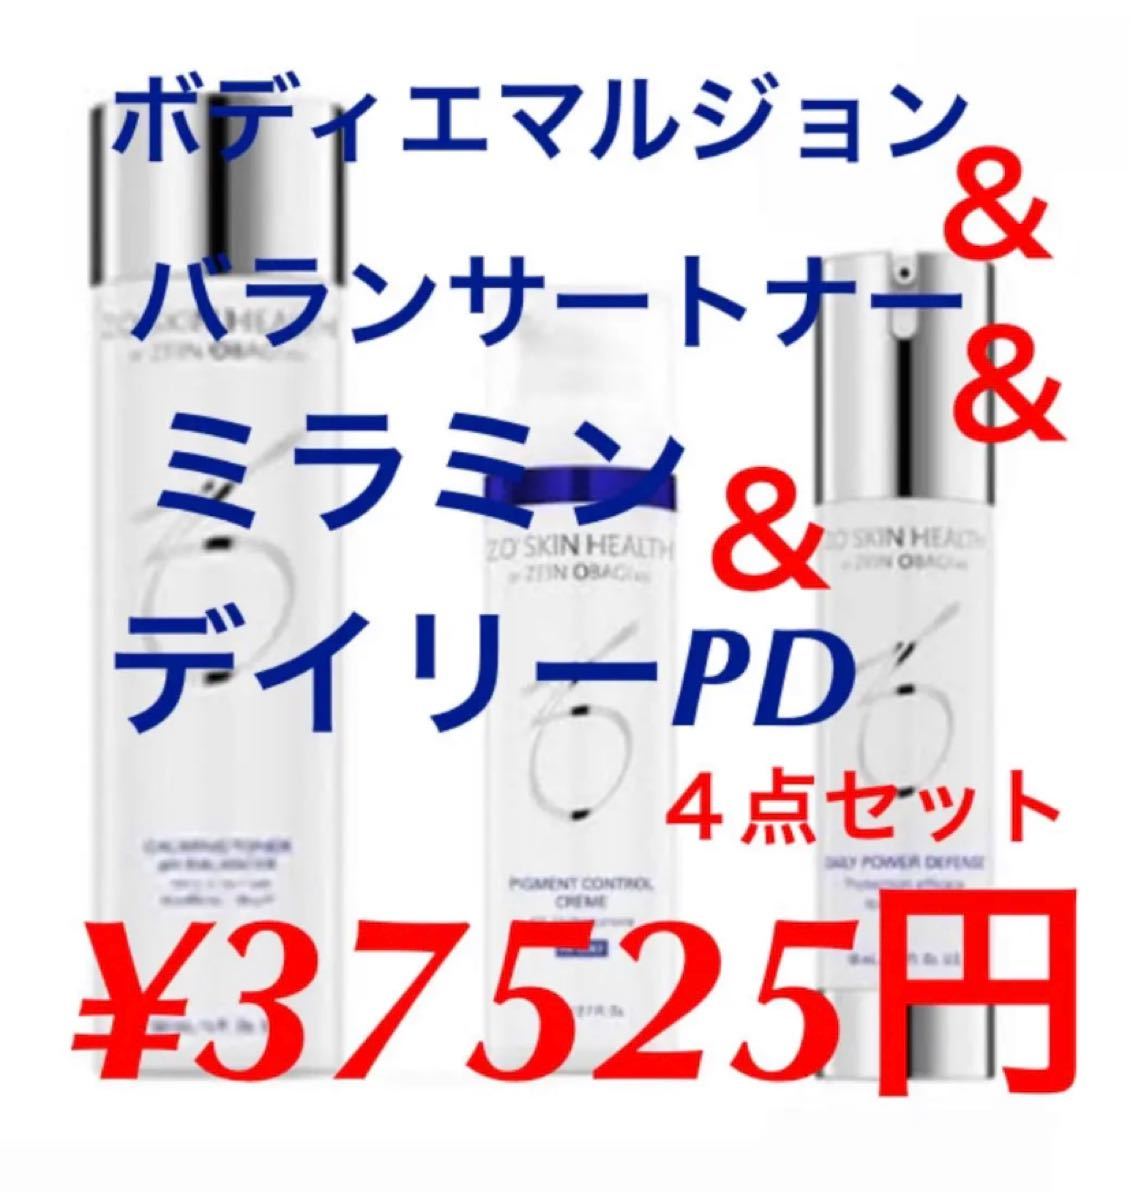 11423円 ファクトリーアウトレット 新品 ゼオスキン ディリーPD とバランサートナー セット